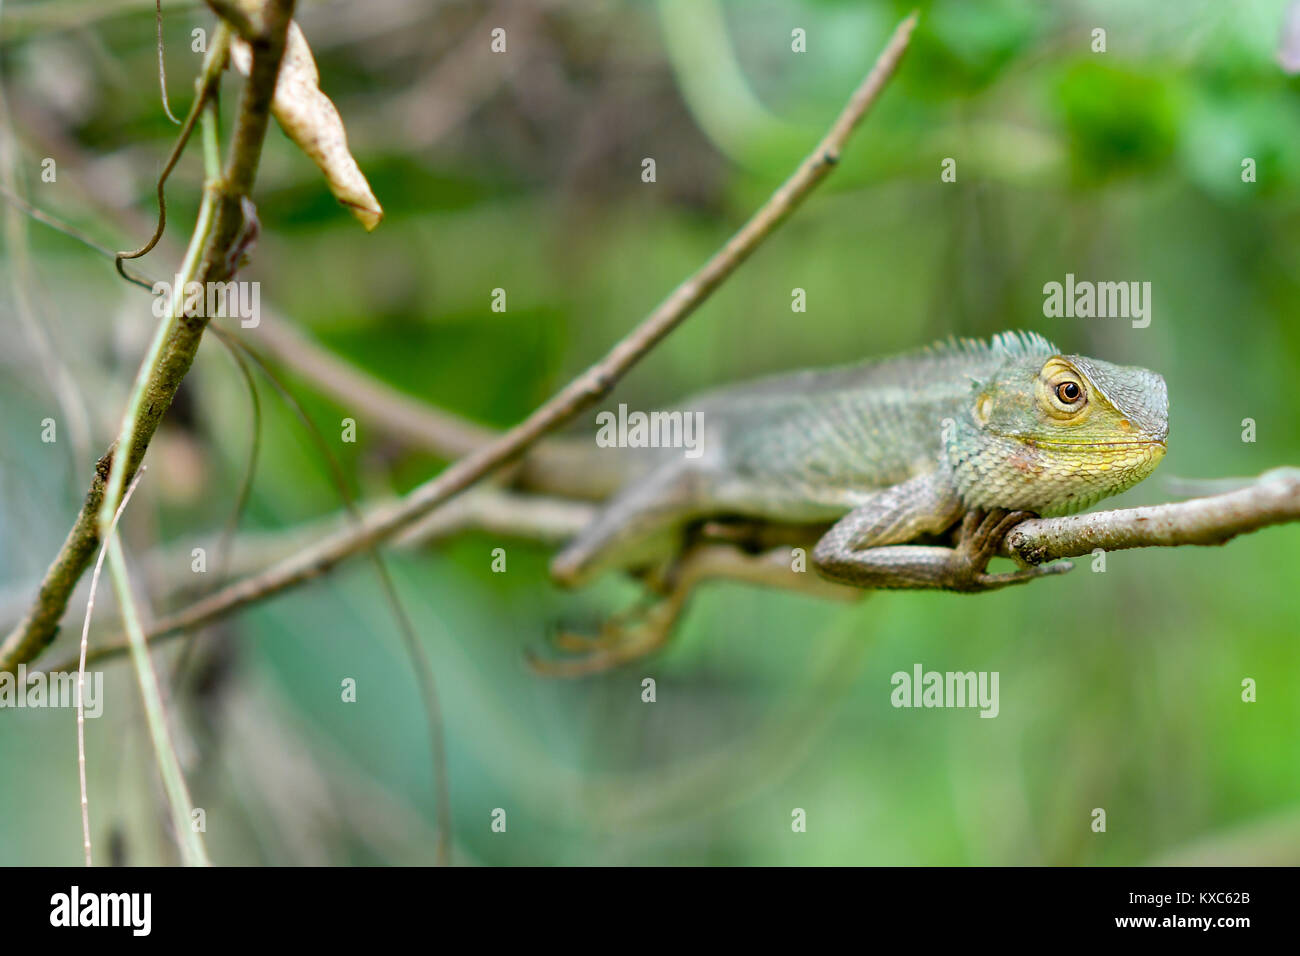 Chameleon resting Banque D'Images